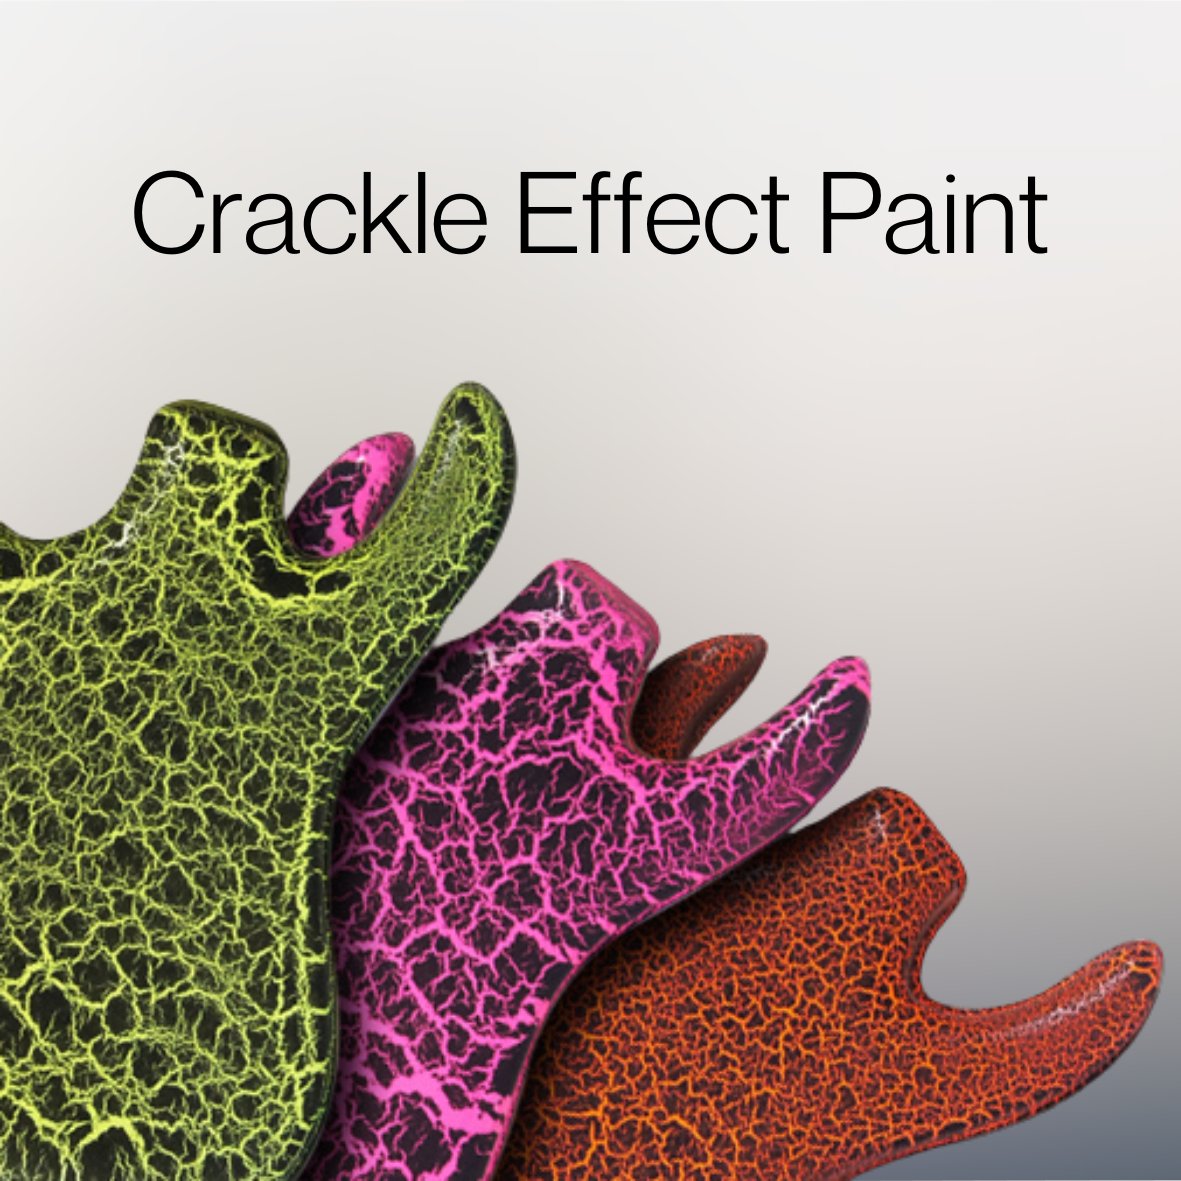 Crackle Effect Paint